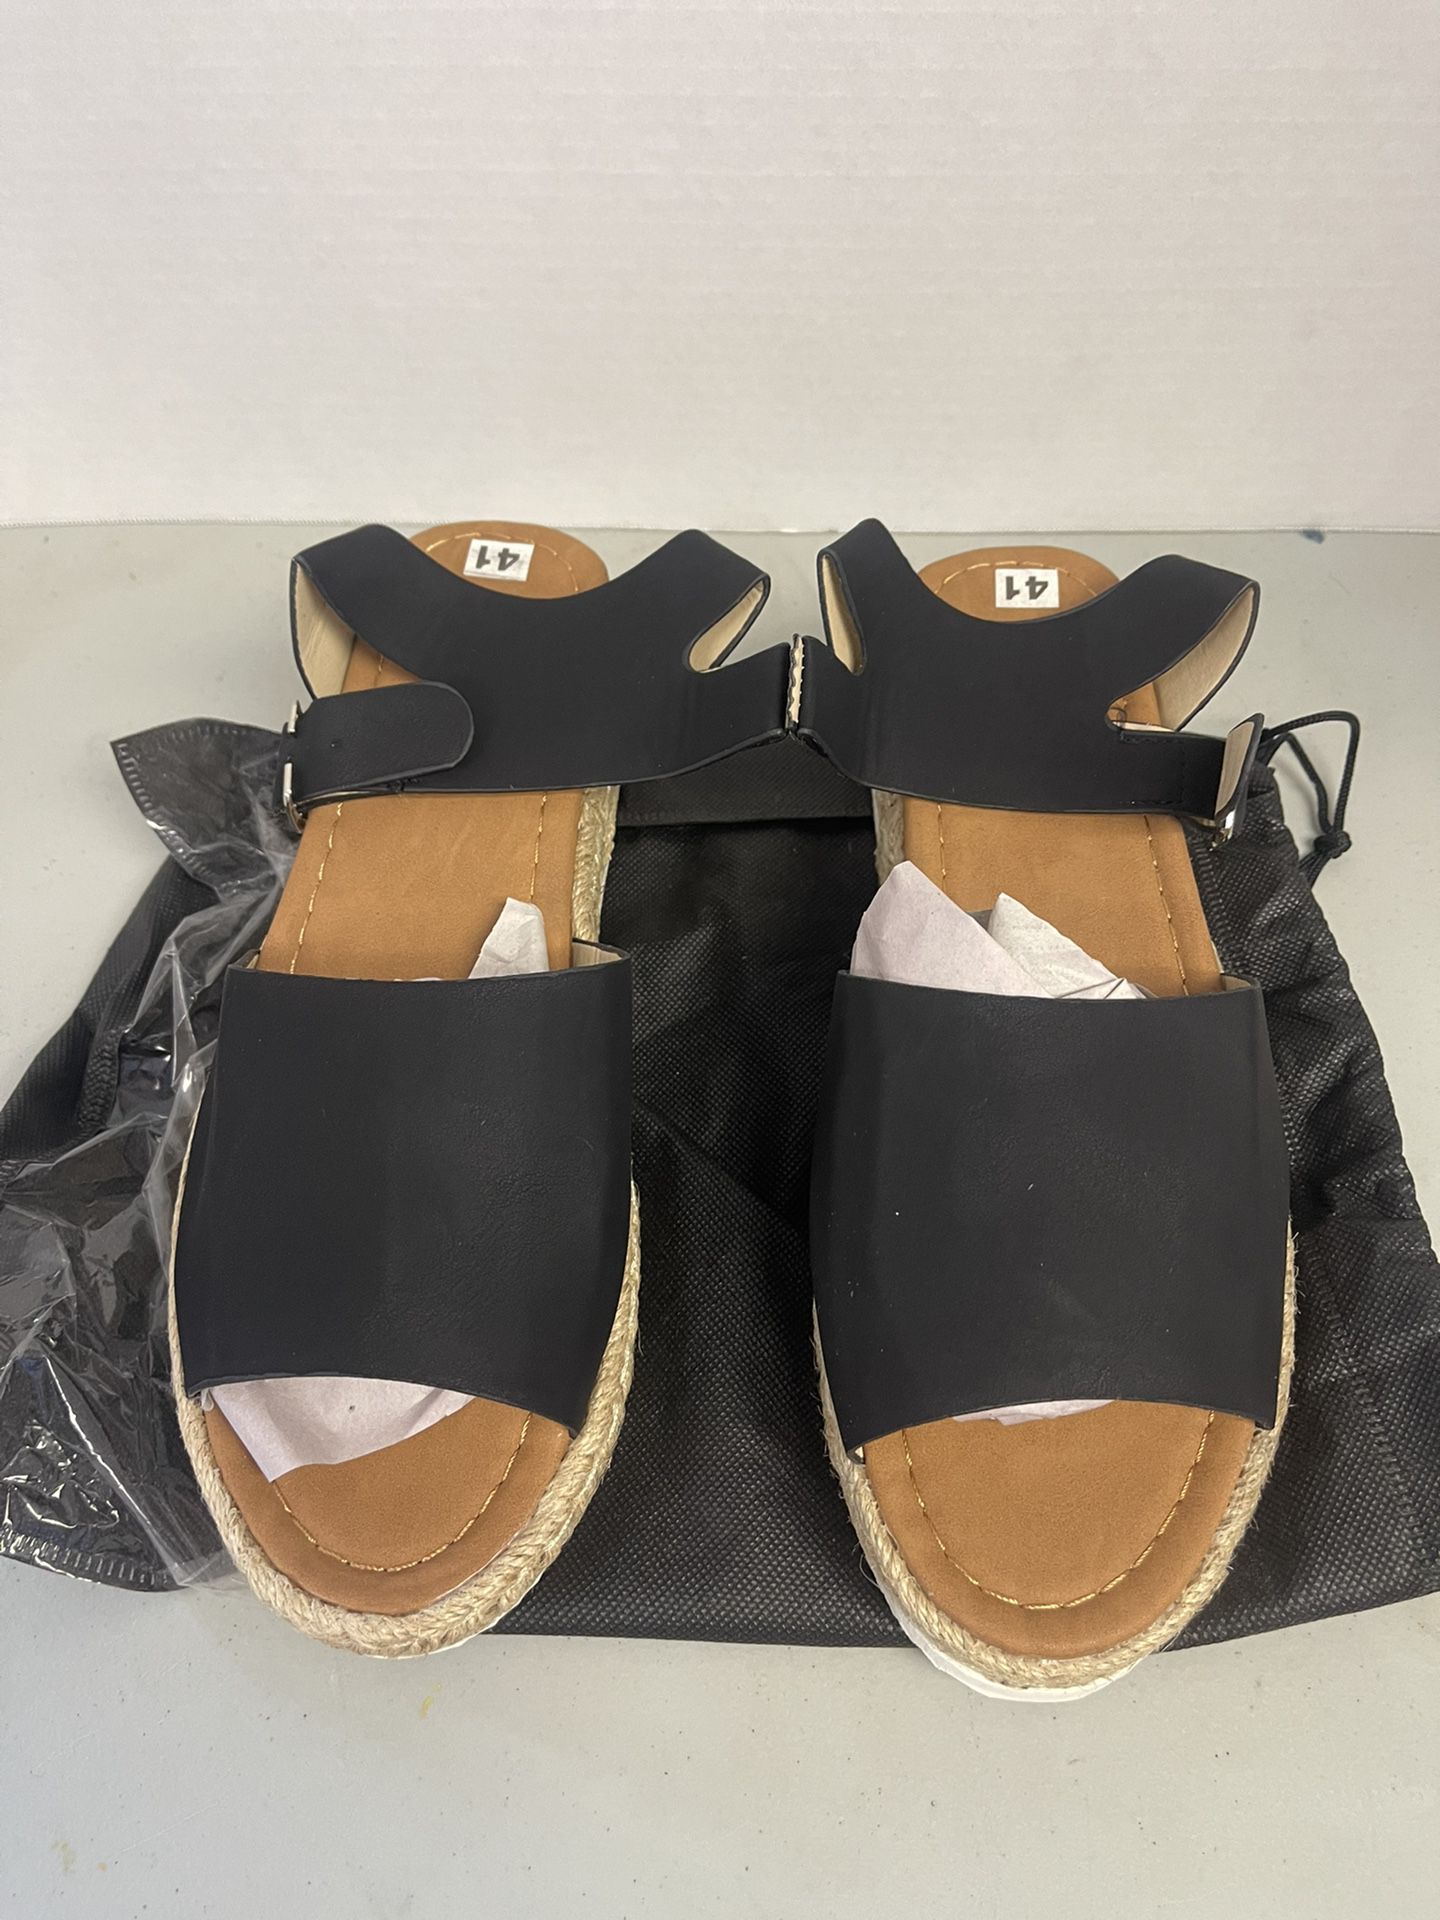 Athlefit Women's Platform Sandals Ankle Strap, Black, Size 8.5 shoes  - SH728